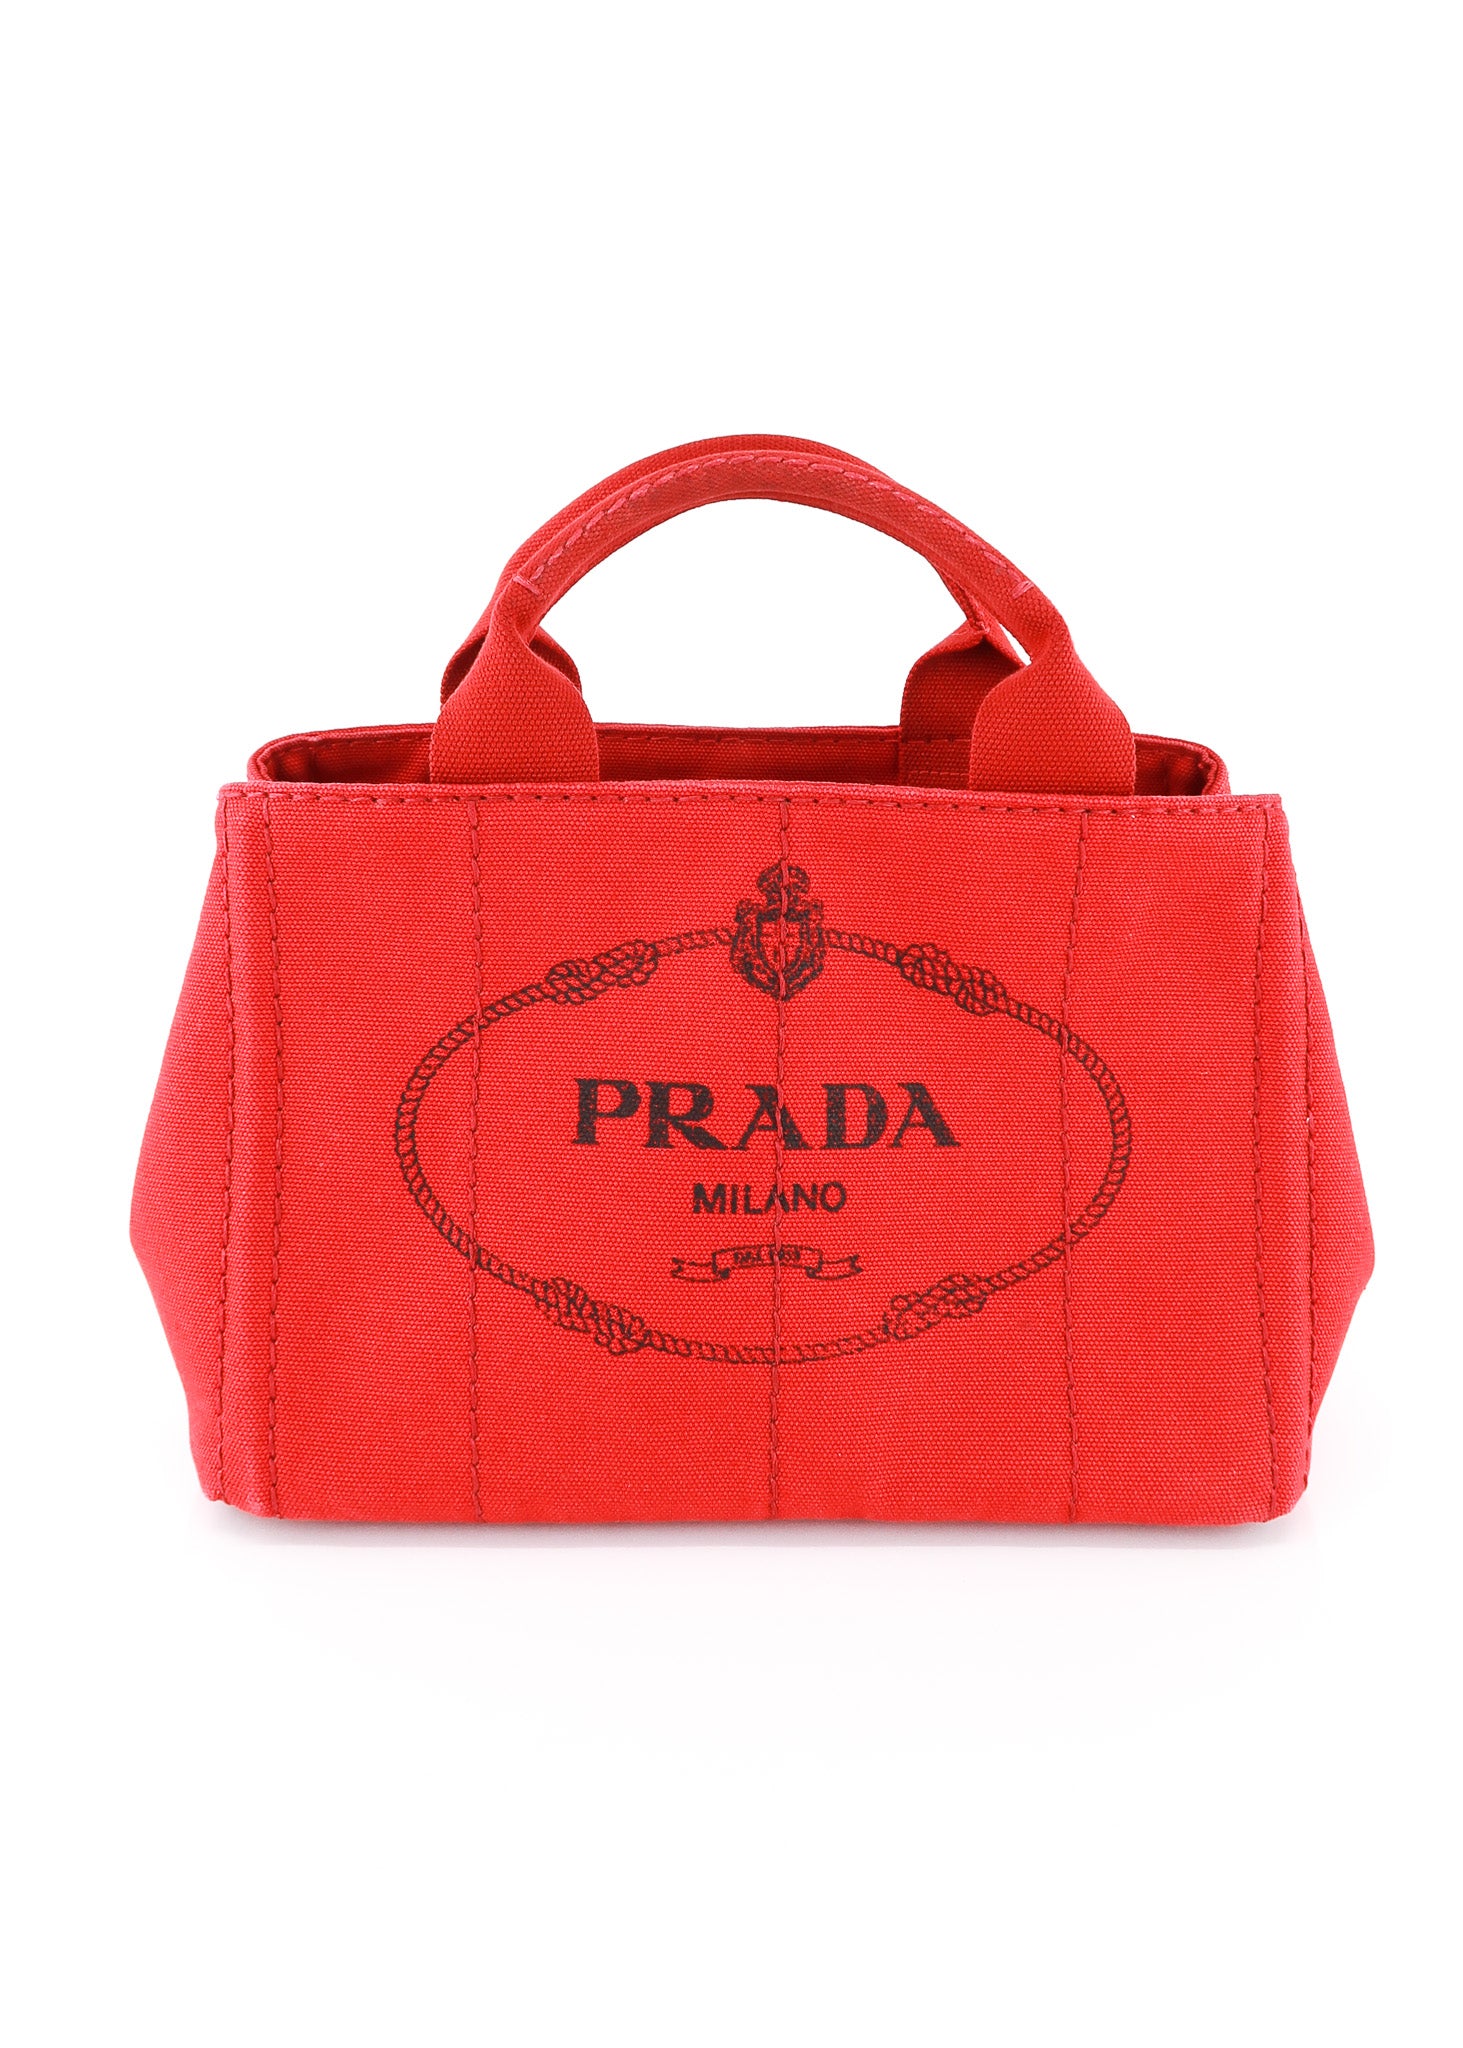 Prada Pionnière Web-Strap Shoulder Bag, Red (Rubino/Granato) | Bags,  Fashion handbags, Purses